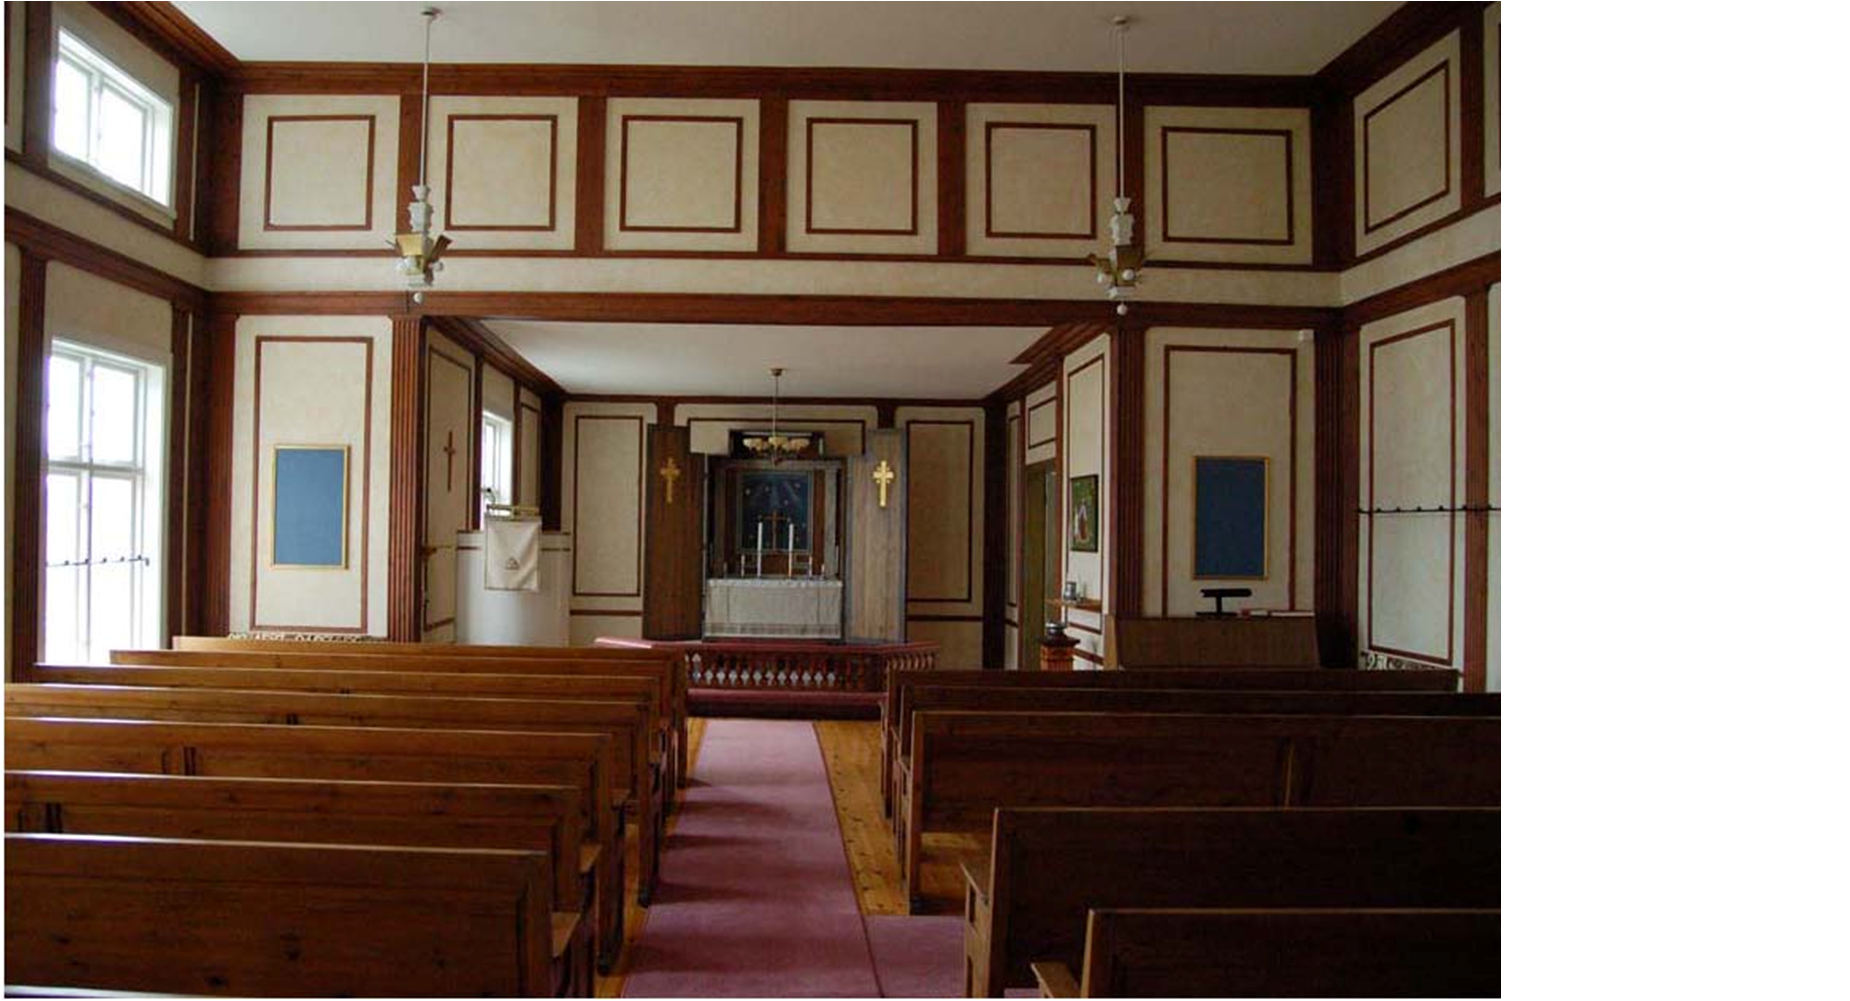 Kapellsalen karaktäriseras av de upprepade kvadratiska och rektangulära fälten på väggarna. Utformningen i återhållsam klassiserande stil är typisk för tiden före och omkring 1930. 